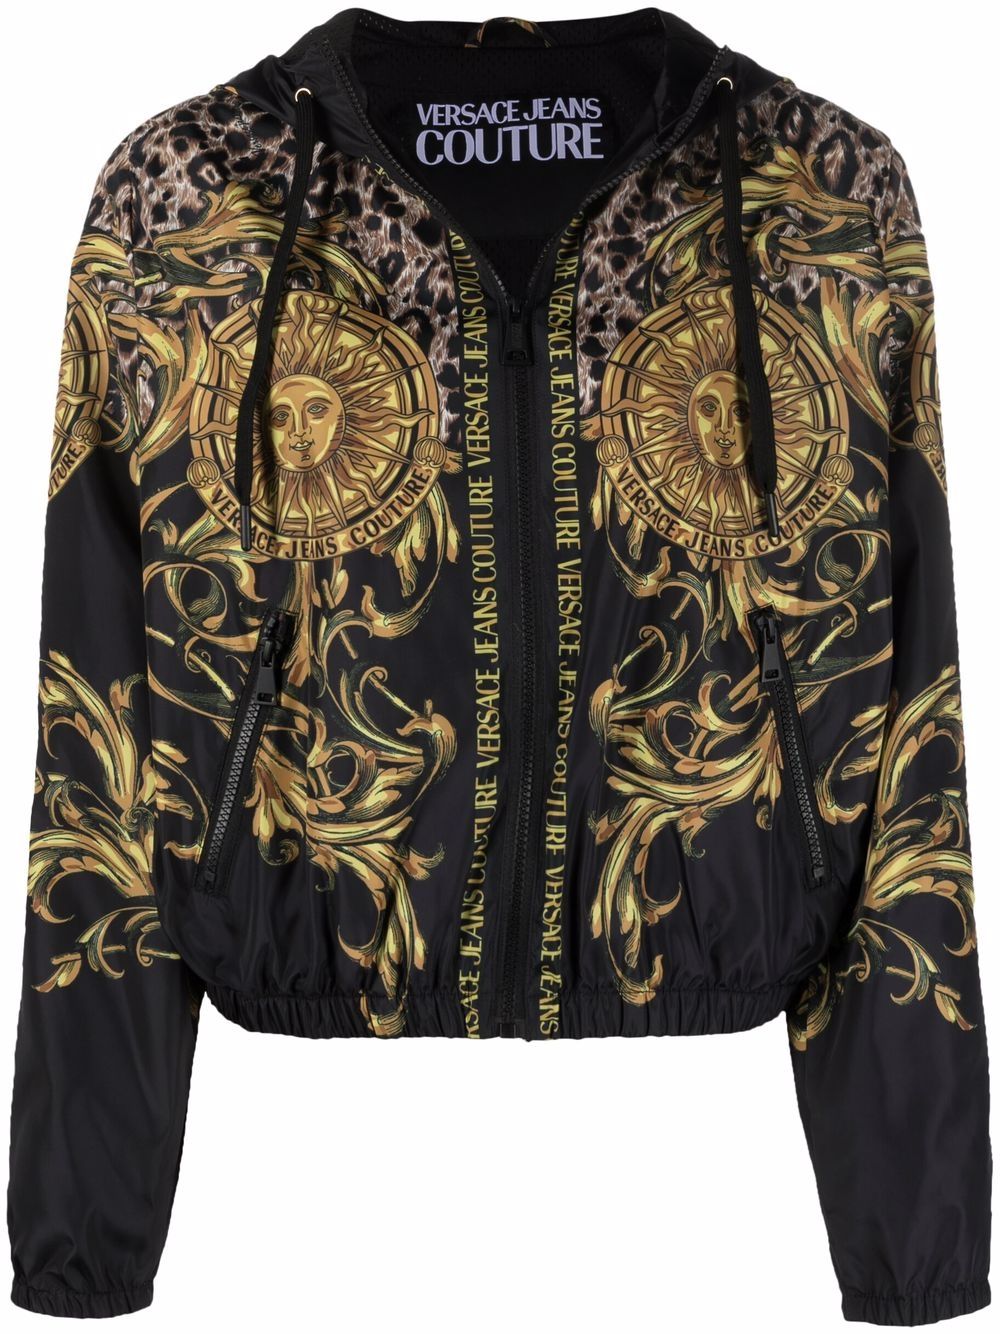 фото Versace jeans couture легкая куртка с узором regalia baroque